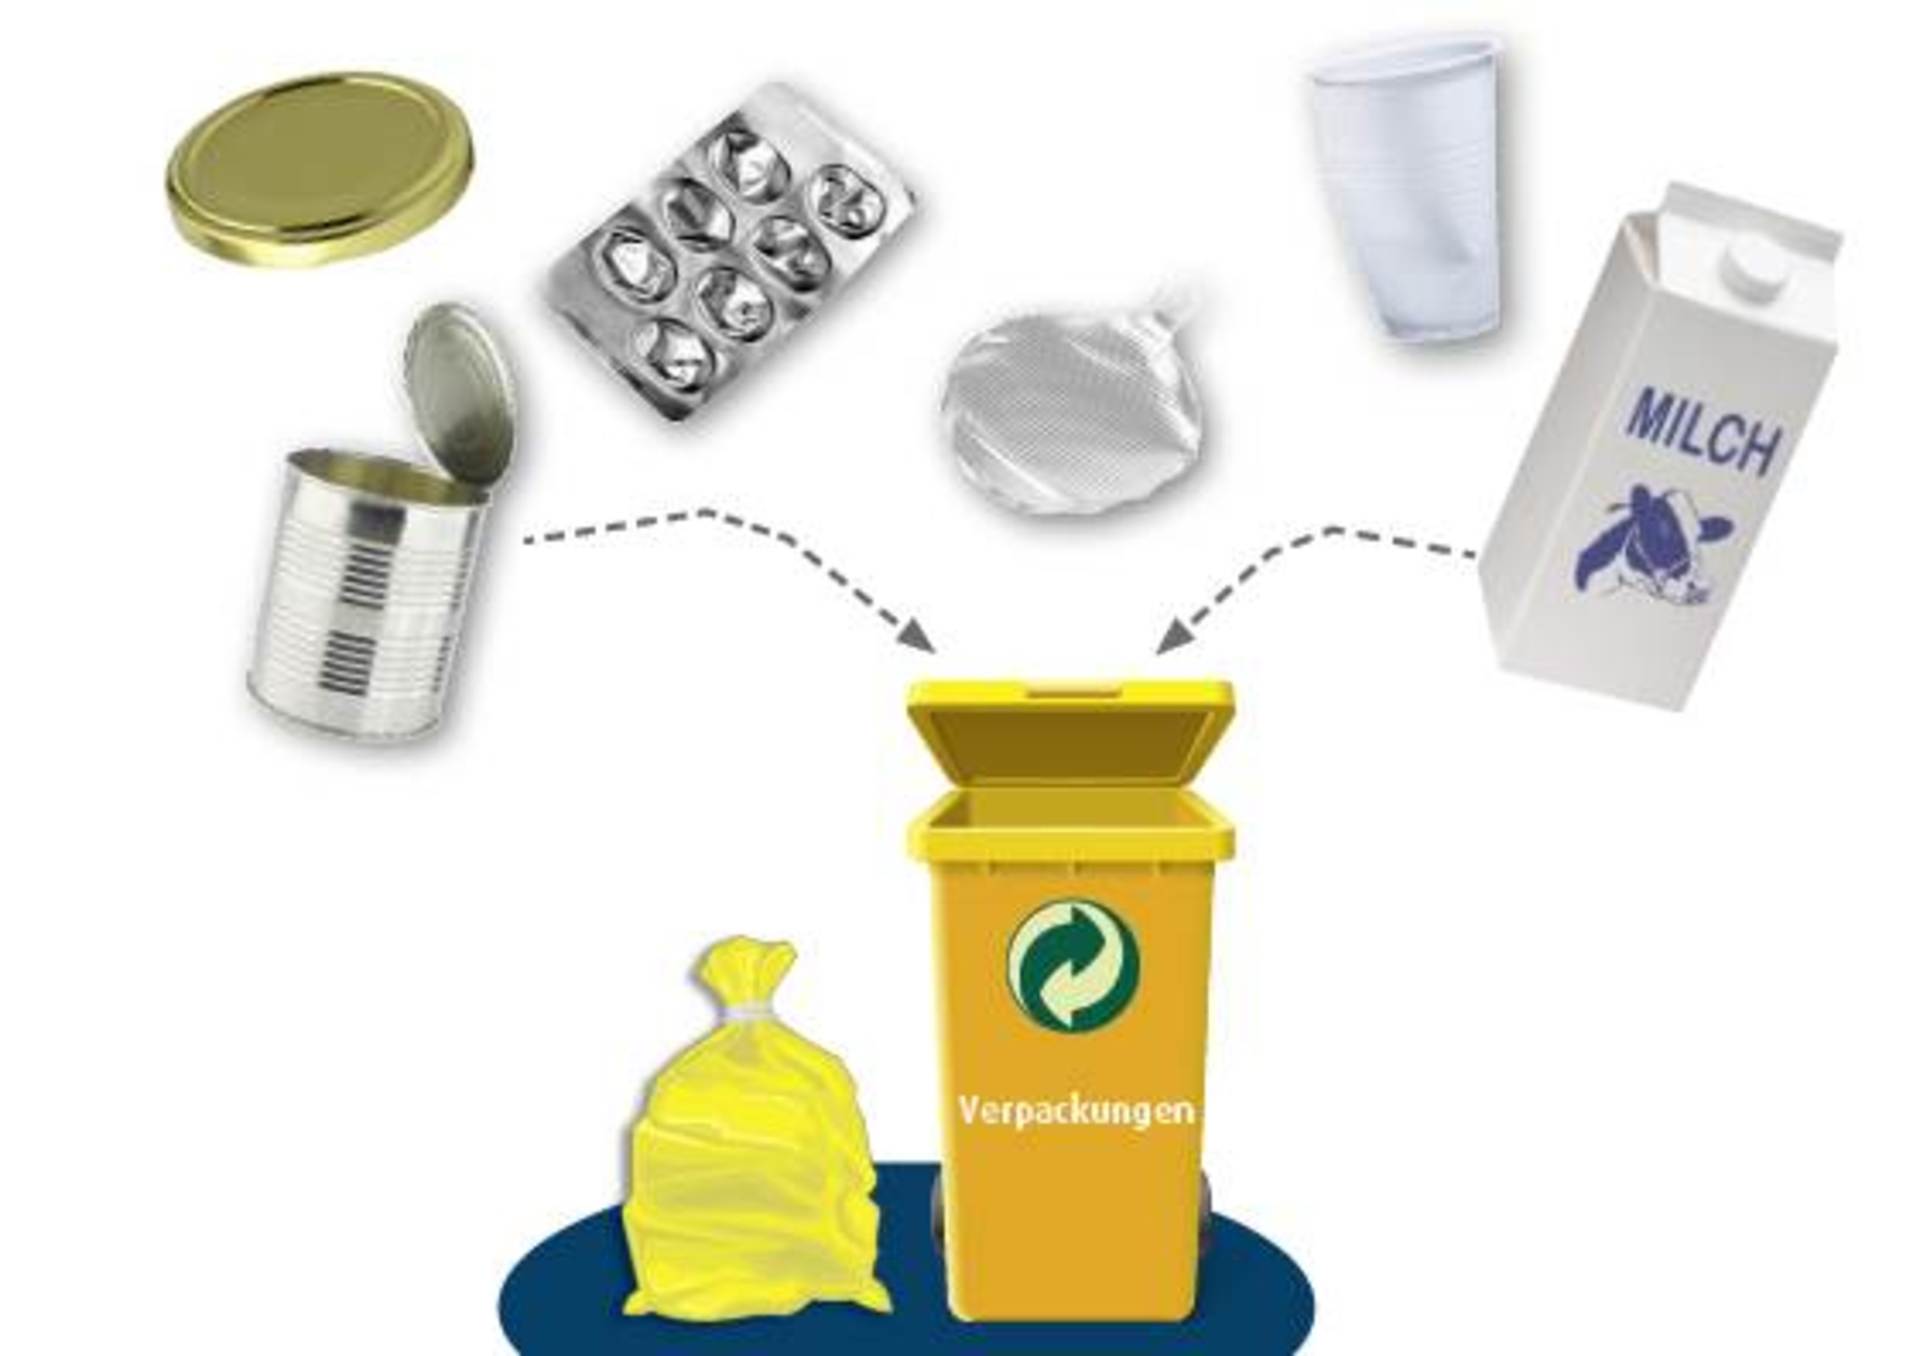 Verpackungsmüll gehört in die gelbe Mülltonne oder den gelben Müllsack.